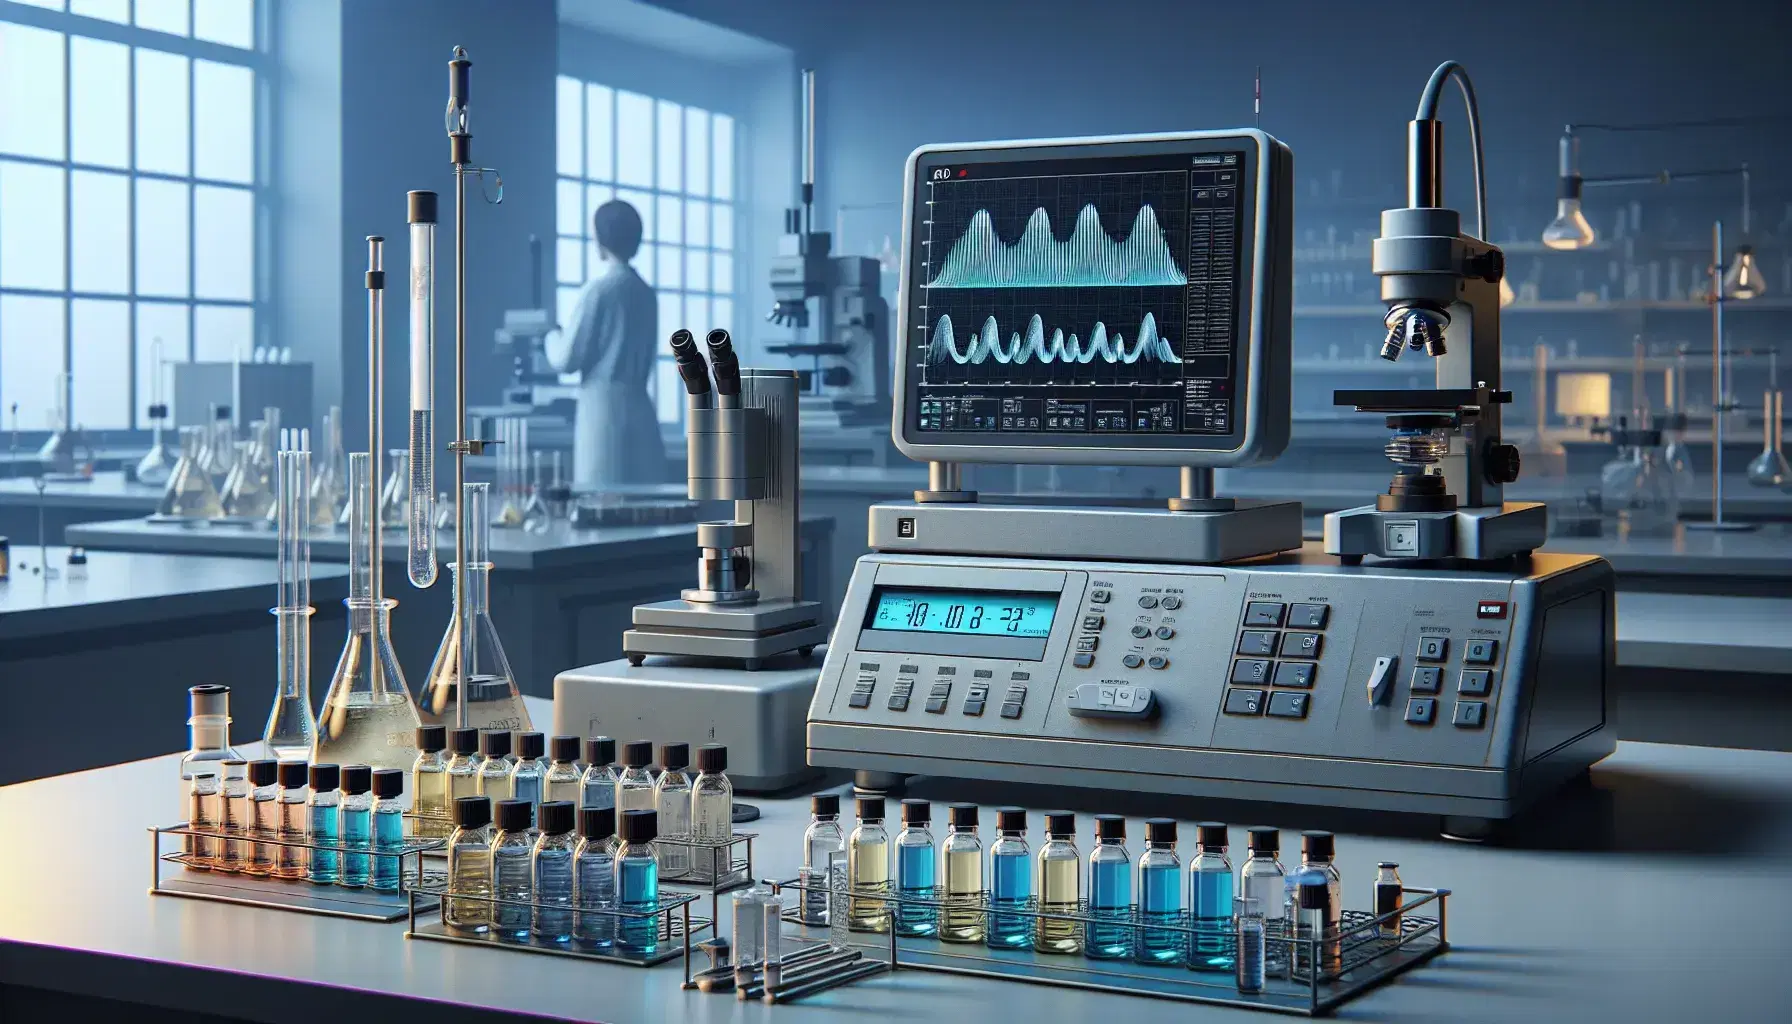 Laboratorio de química analítica con espectrofotómetro, viales de líquidos coloridos, balanza analítica y microscopio electrónico manejado por científico con guantes.